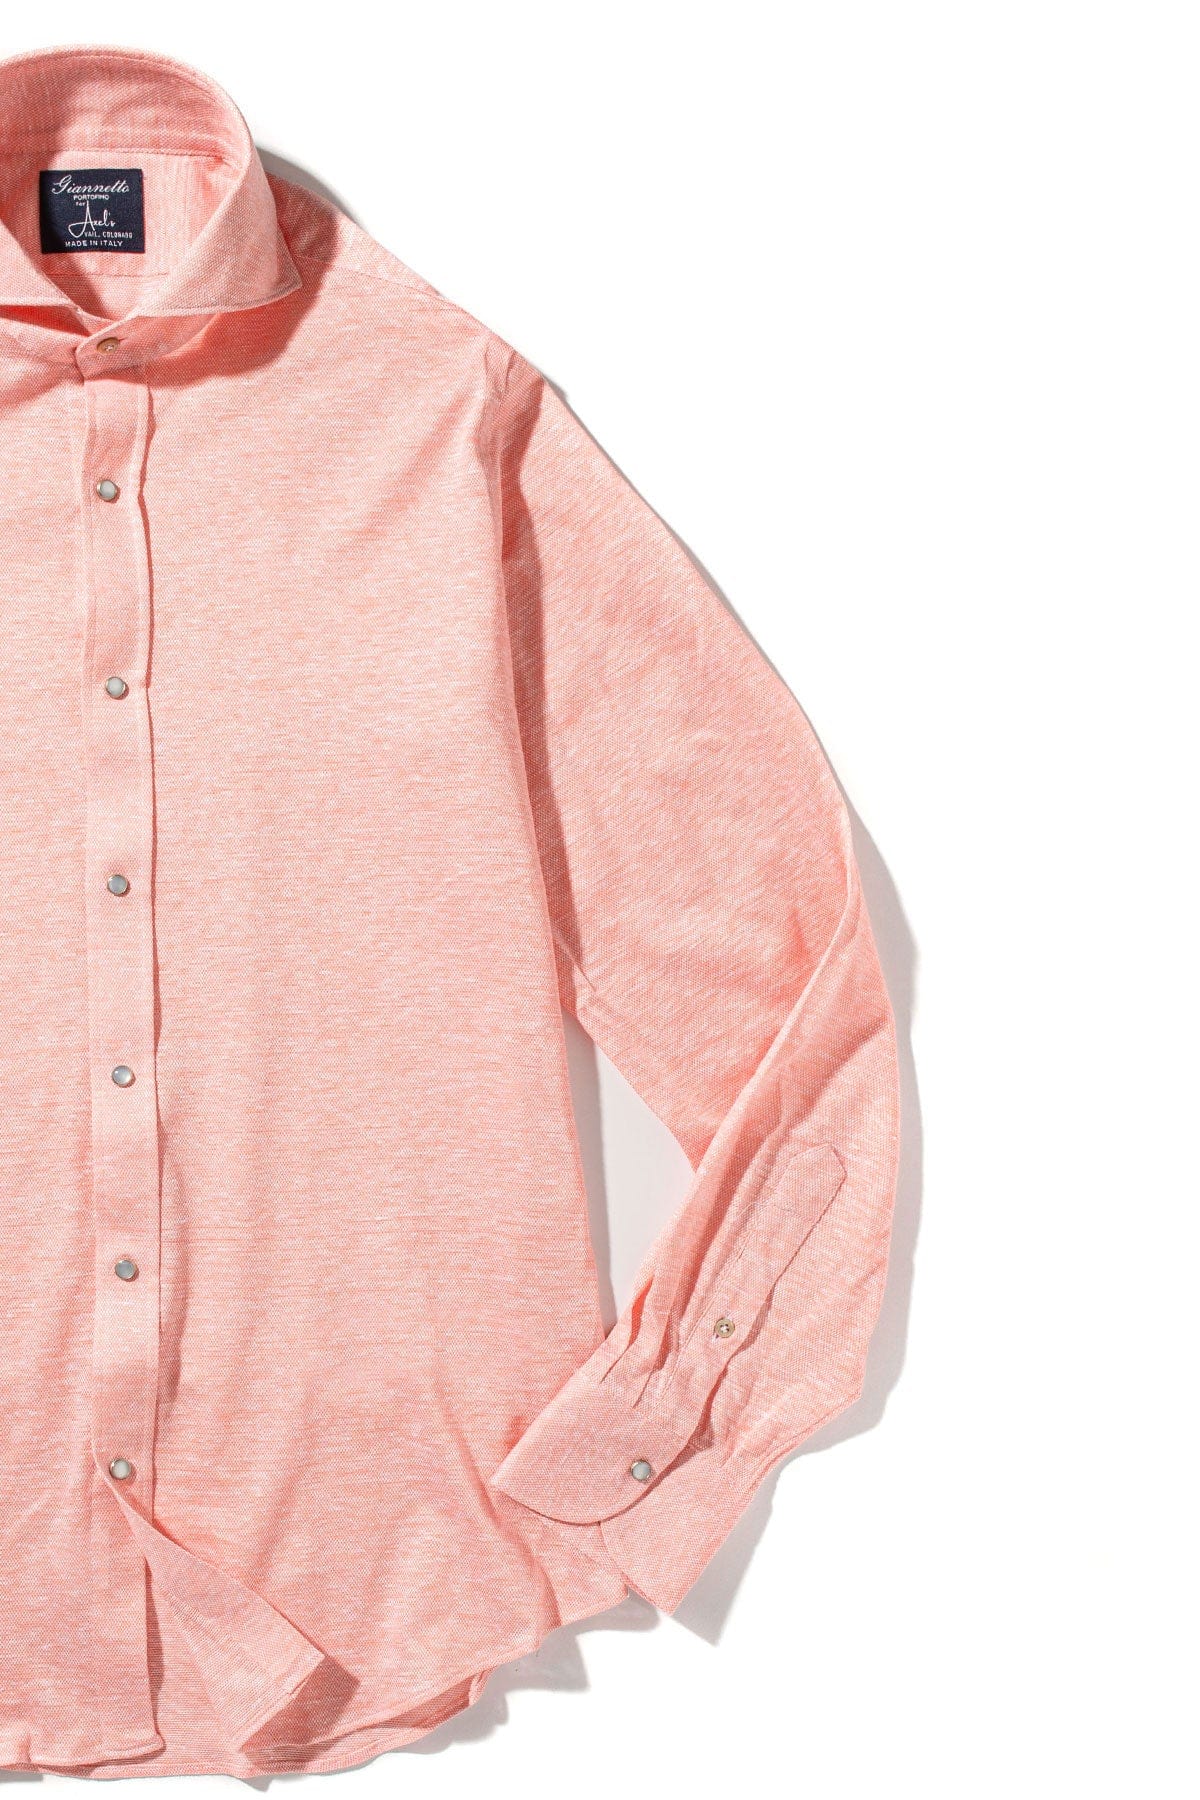 Schwinn Cotton Linen Shirt in Pink - AXEL'S